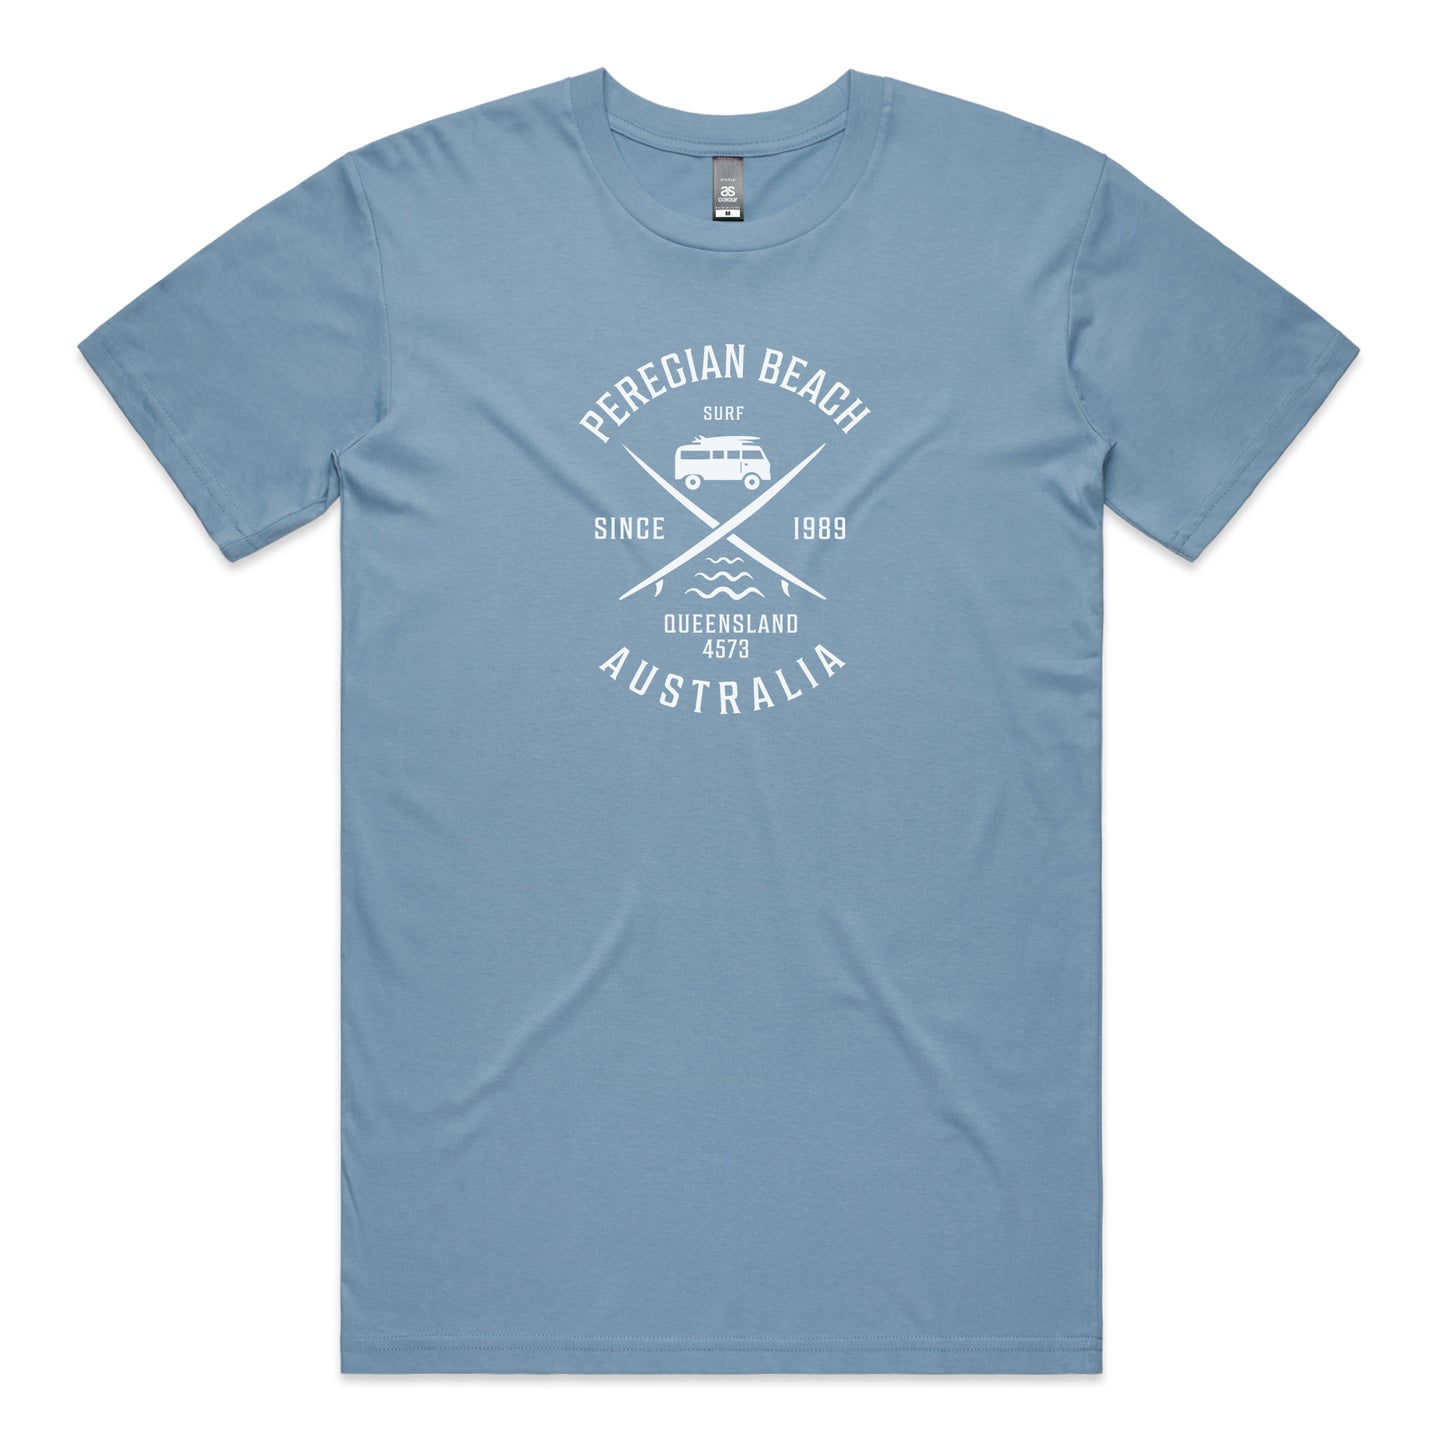 Peregian Beach Kombi Cross T-shirt - Carolina Blue